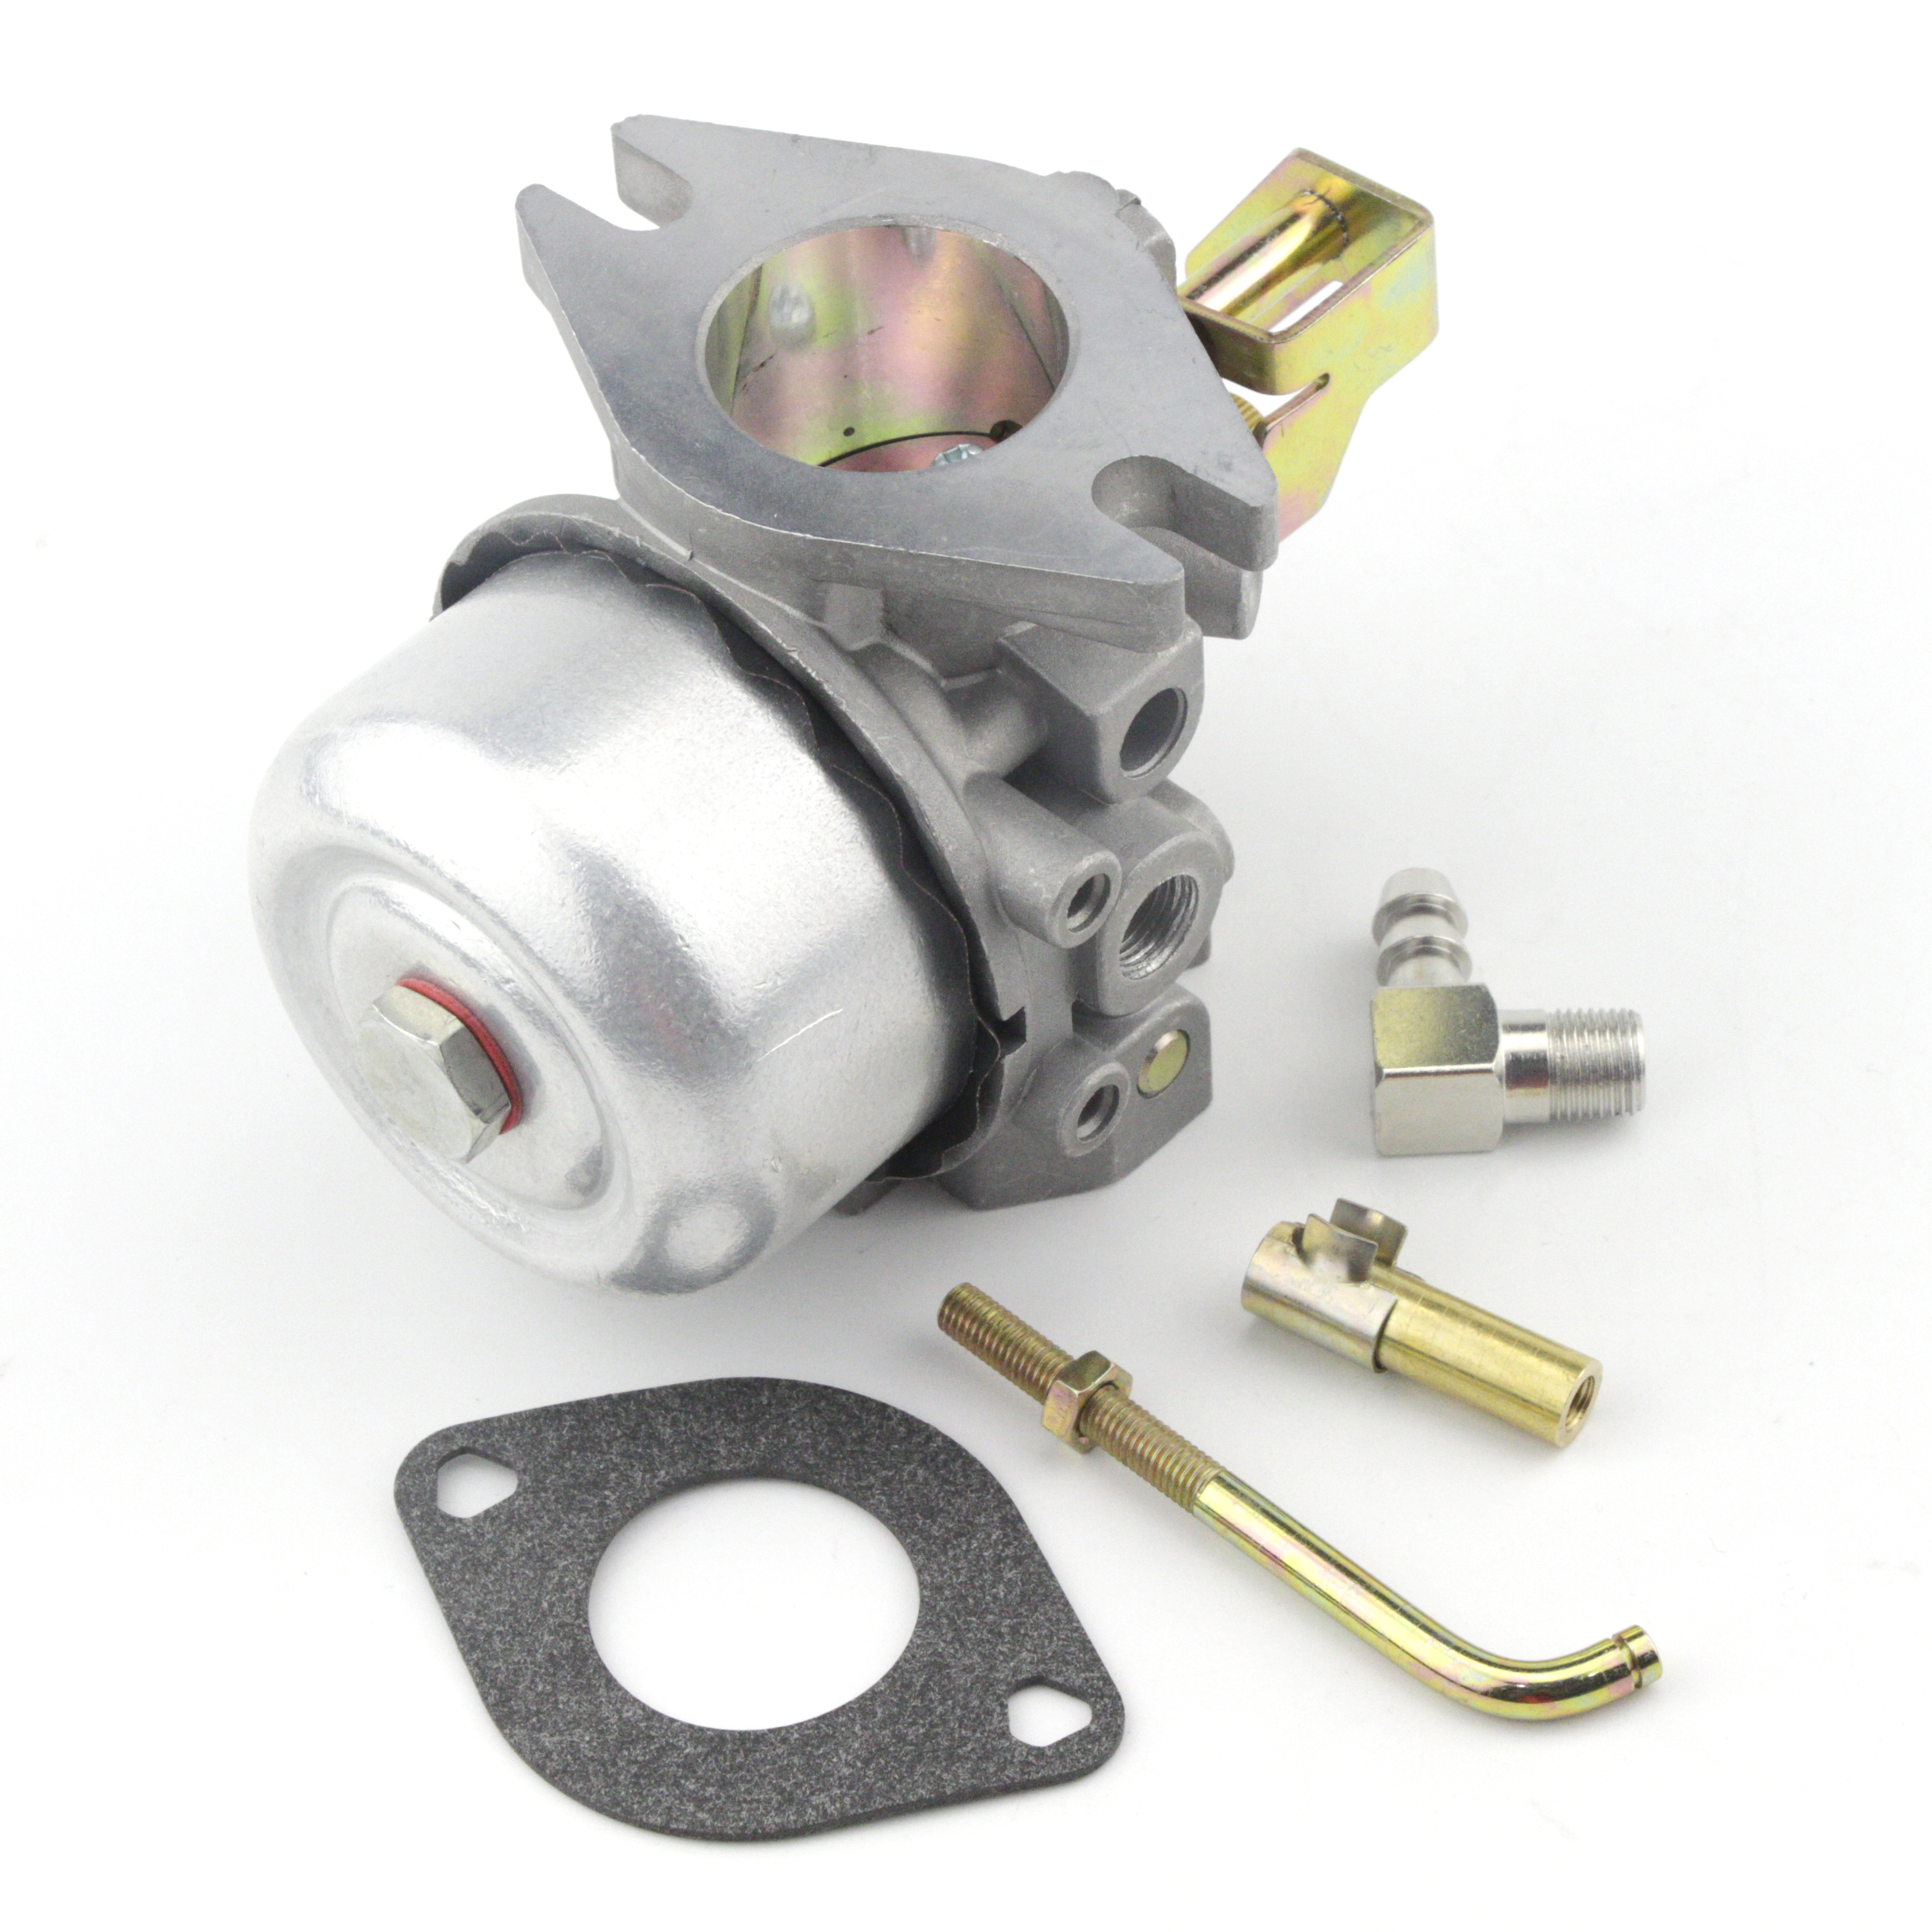 Carburetor Fits for Kohler K341 K321 14 HP 16 HP Engine Carb Replace #316 Carb 